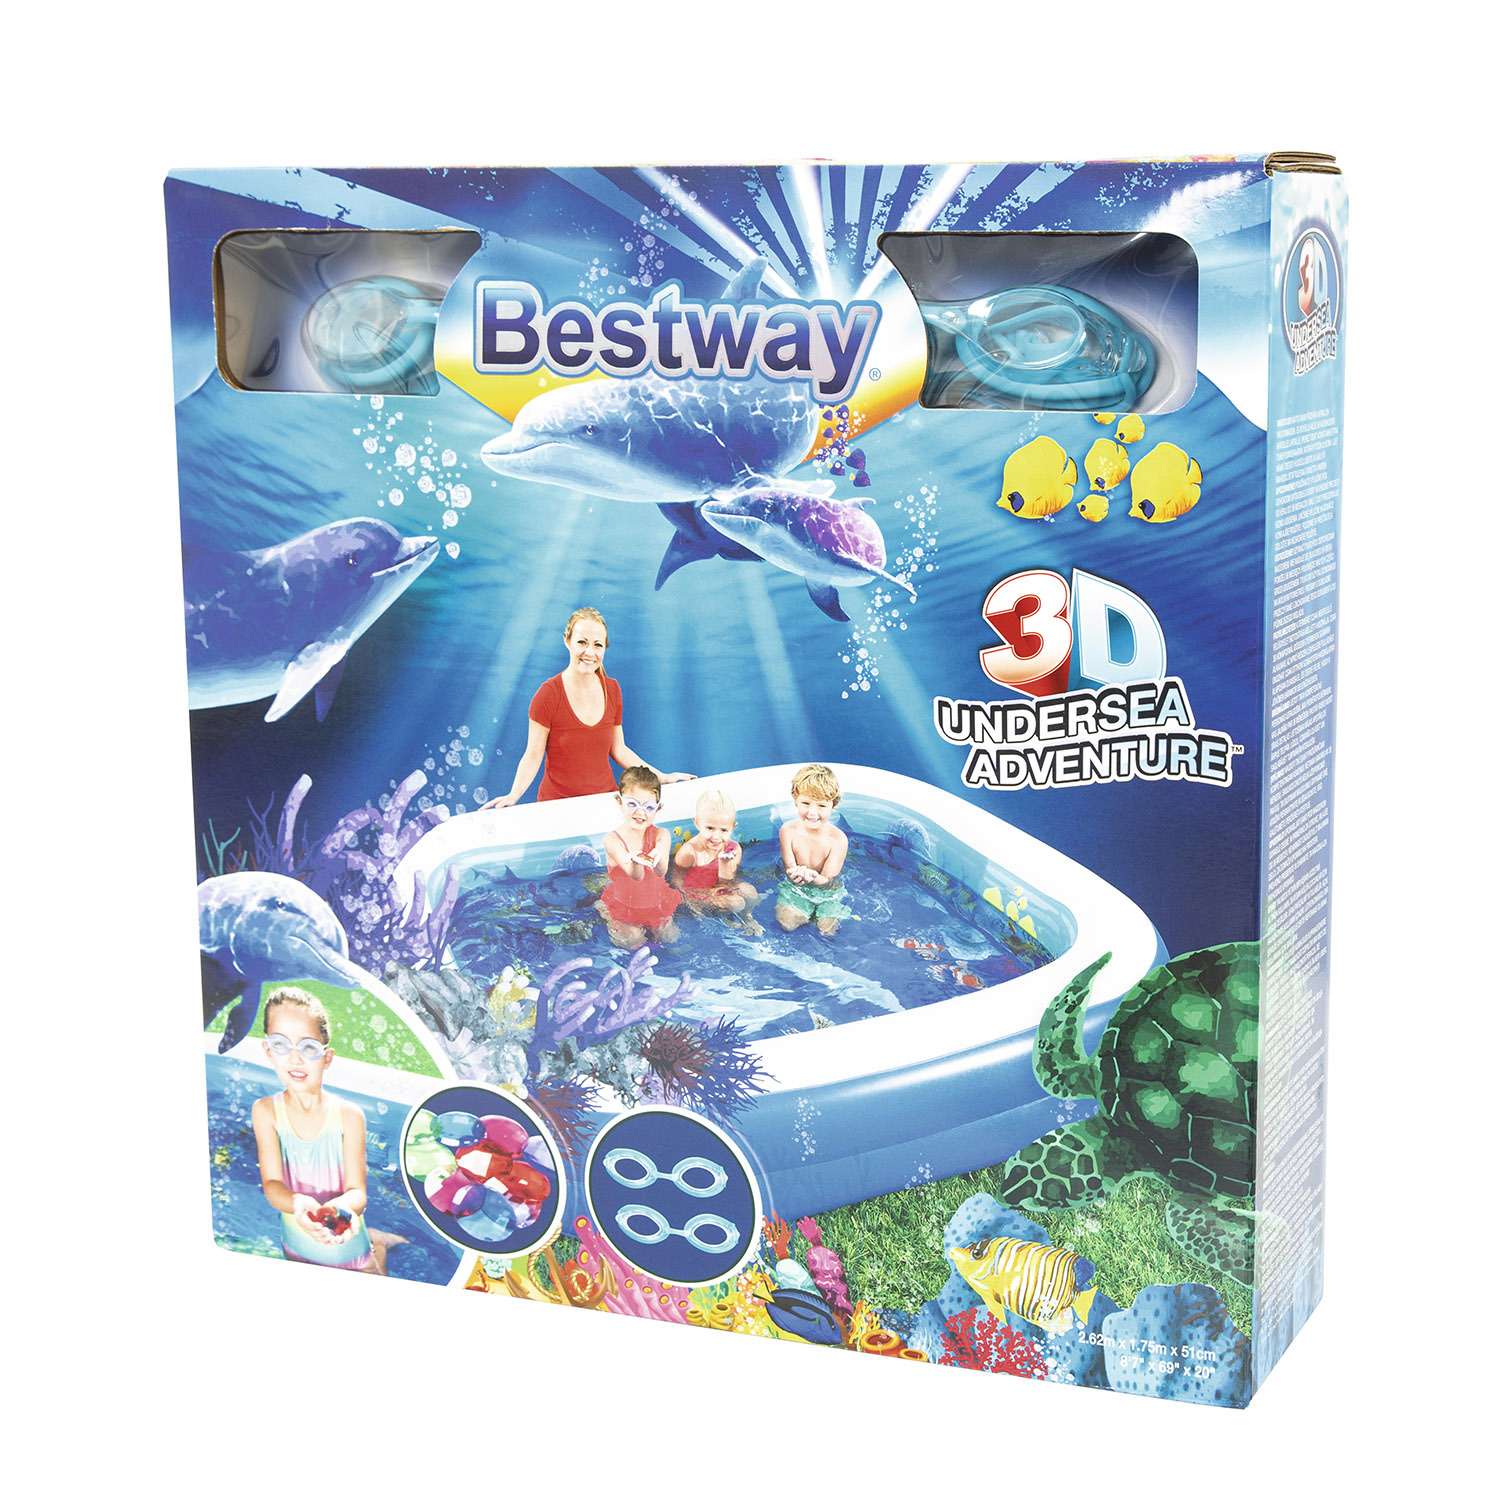 Бассейн надувной Bestway с 3D рисунком Поиски сокровищ 54177 - фото 2